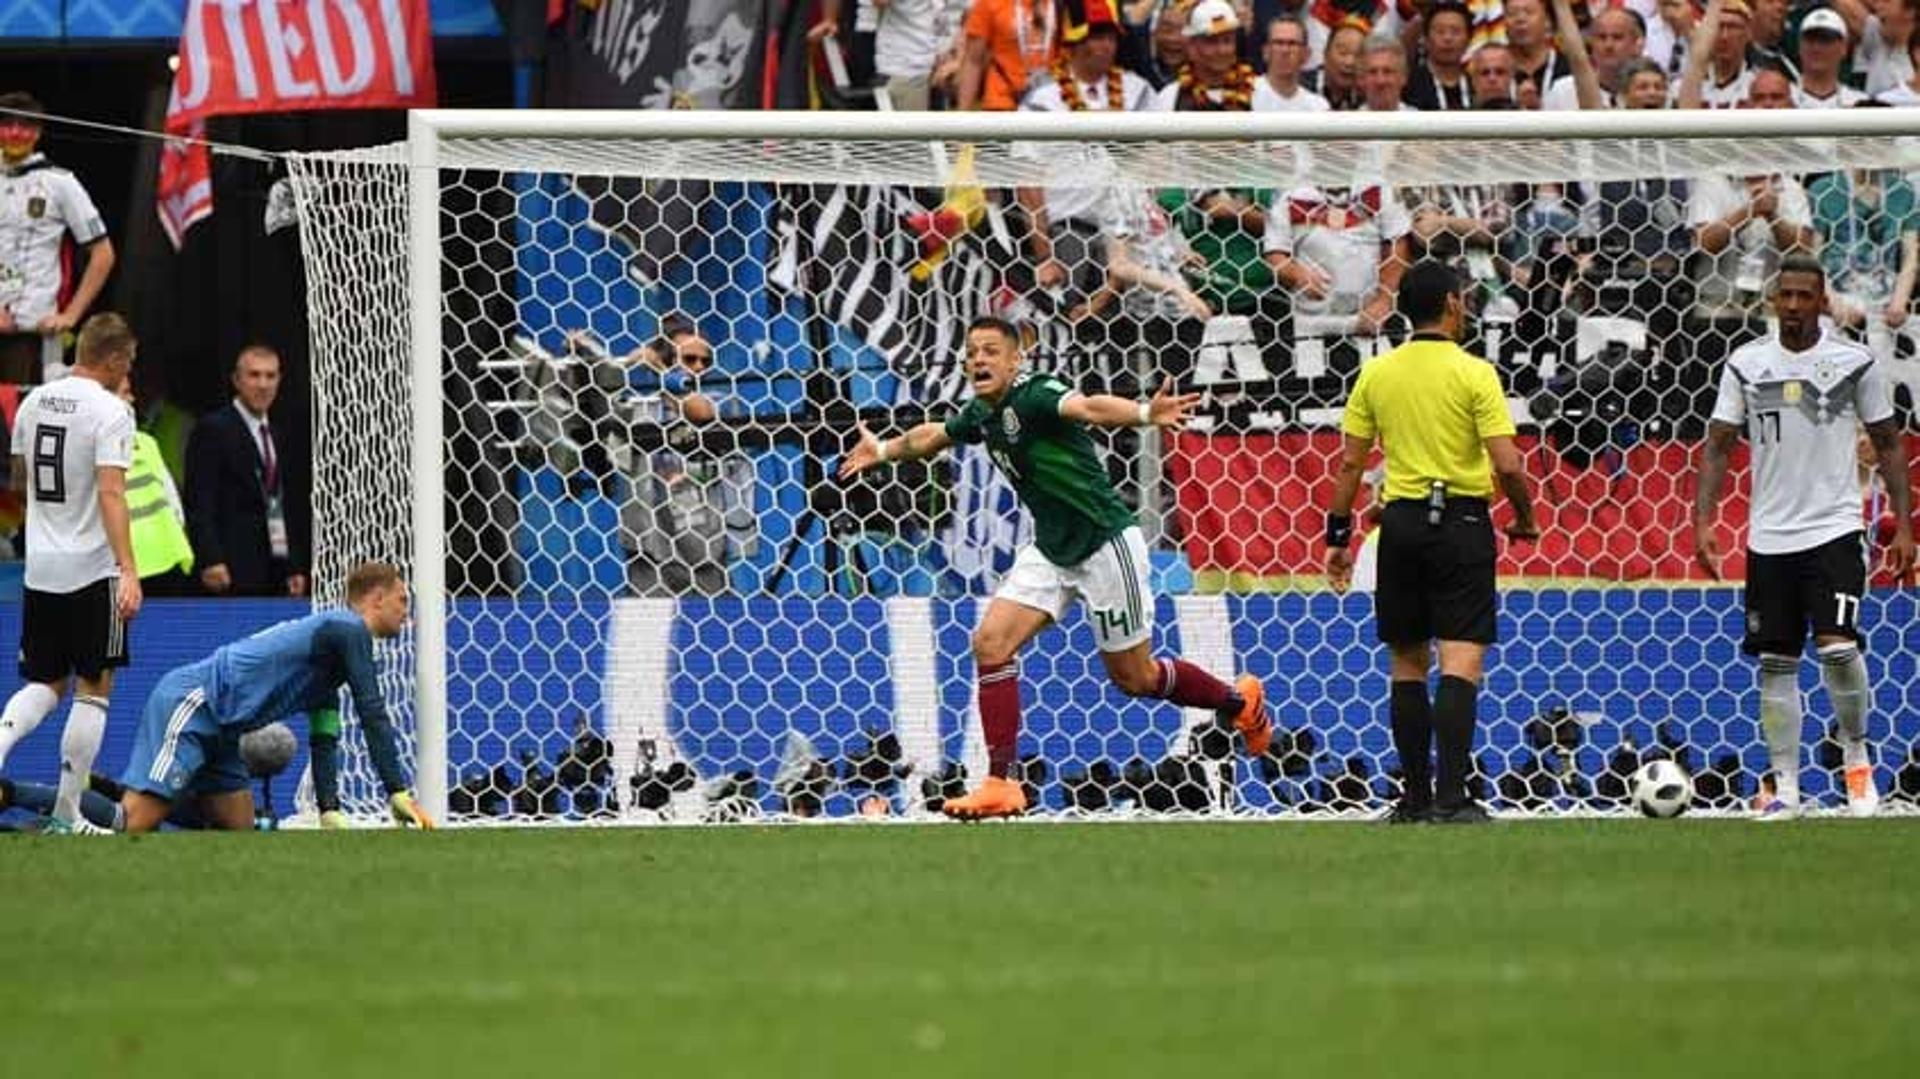 Alemanha 0 x 1 México - 2018 - A atual campeã mundial estreou com derrota para o México na Copa de 2018, em Moscou. Lozano marcou o único gol, no primeiro tempo, para a festa da multidão mexicana, sempre presente nos estádios